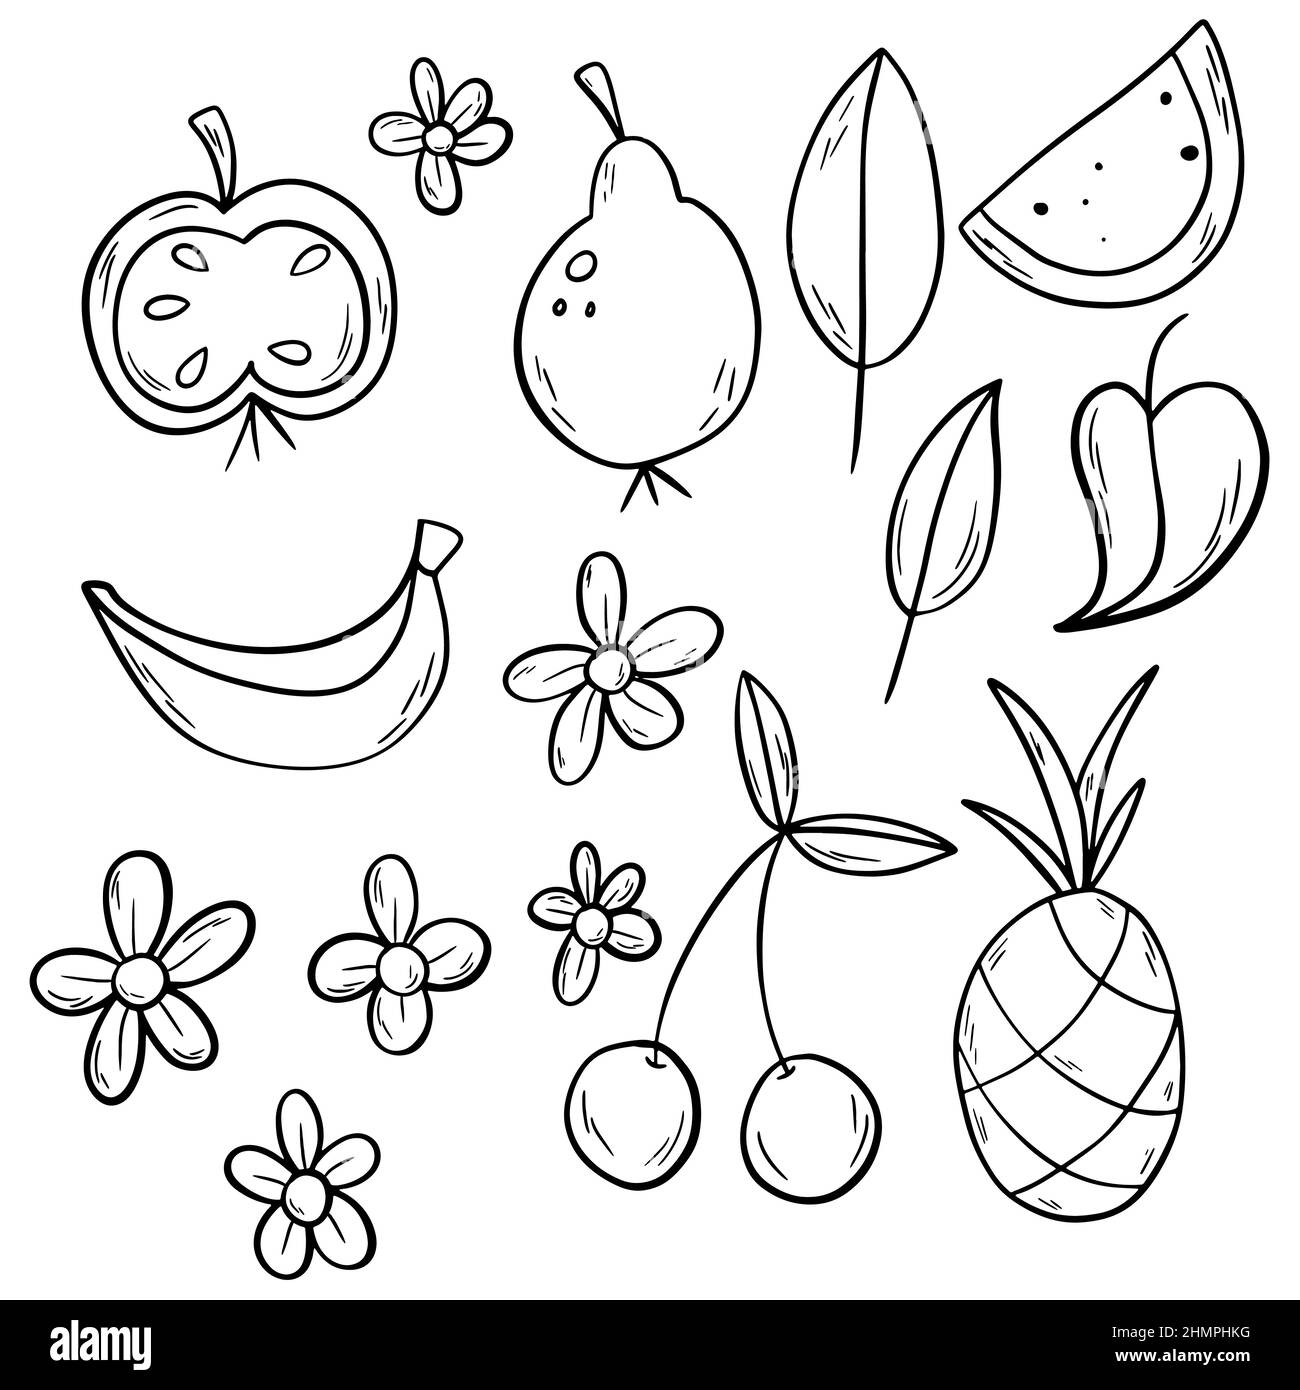 Schwarzer Umriss Doodle Fruit Set mit Ananas, Apfel, Birne, Wassermelone, Banane, Kirsche Stock Vektor